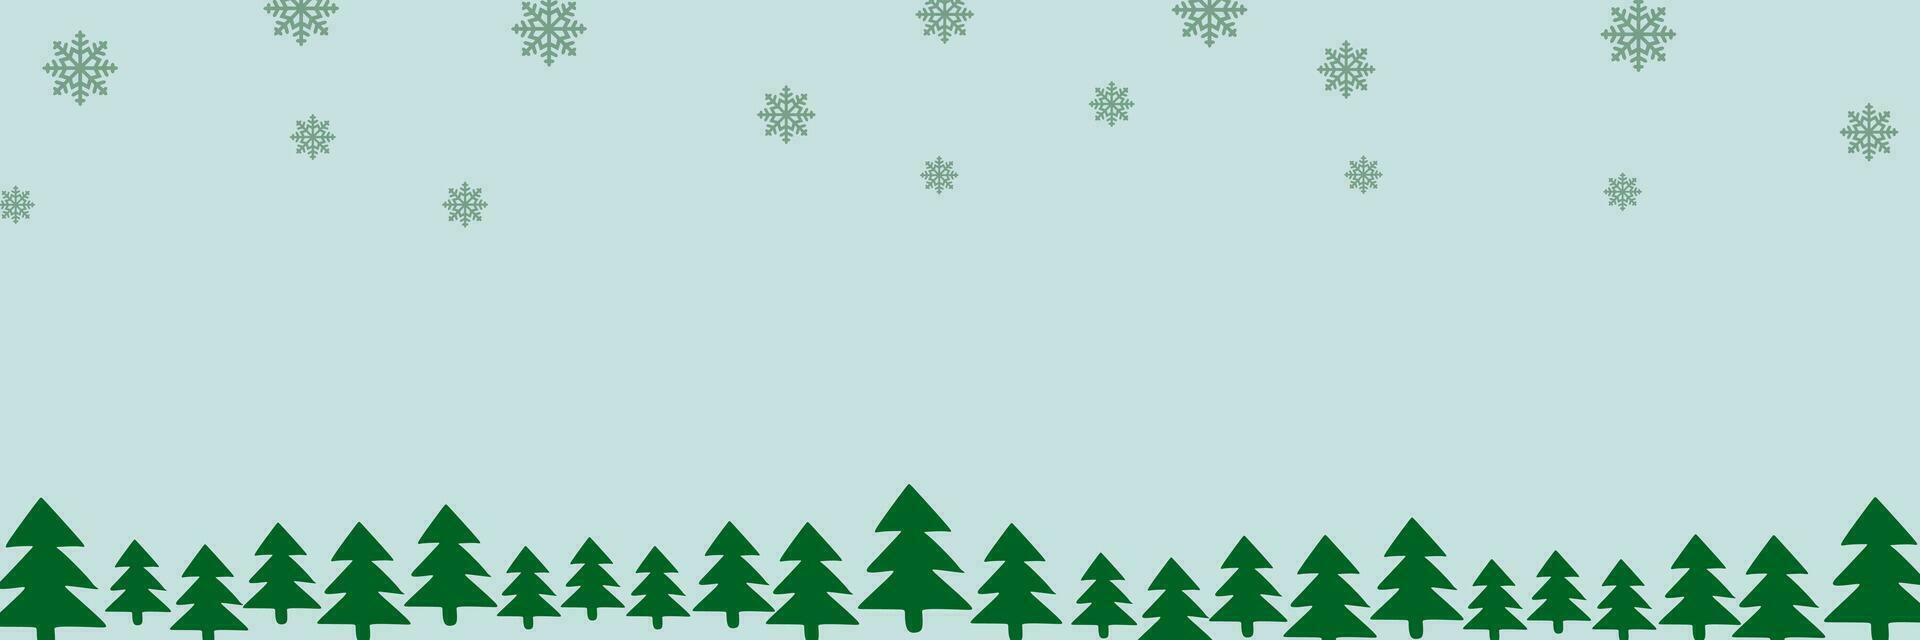 grens met groen Spar bomen, vallend sneeuwvlokken, sneeuwbanken met copyspace voor tekst. pijnboom, Kerstmis groenblijvend planten spandoek. vector Kerstmis boom slinger en sneeuw drijft patroon. vlak achtergrond.